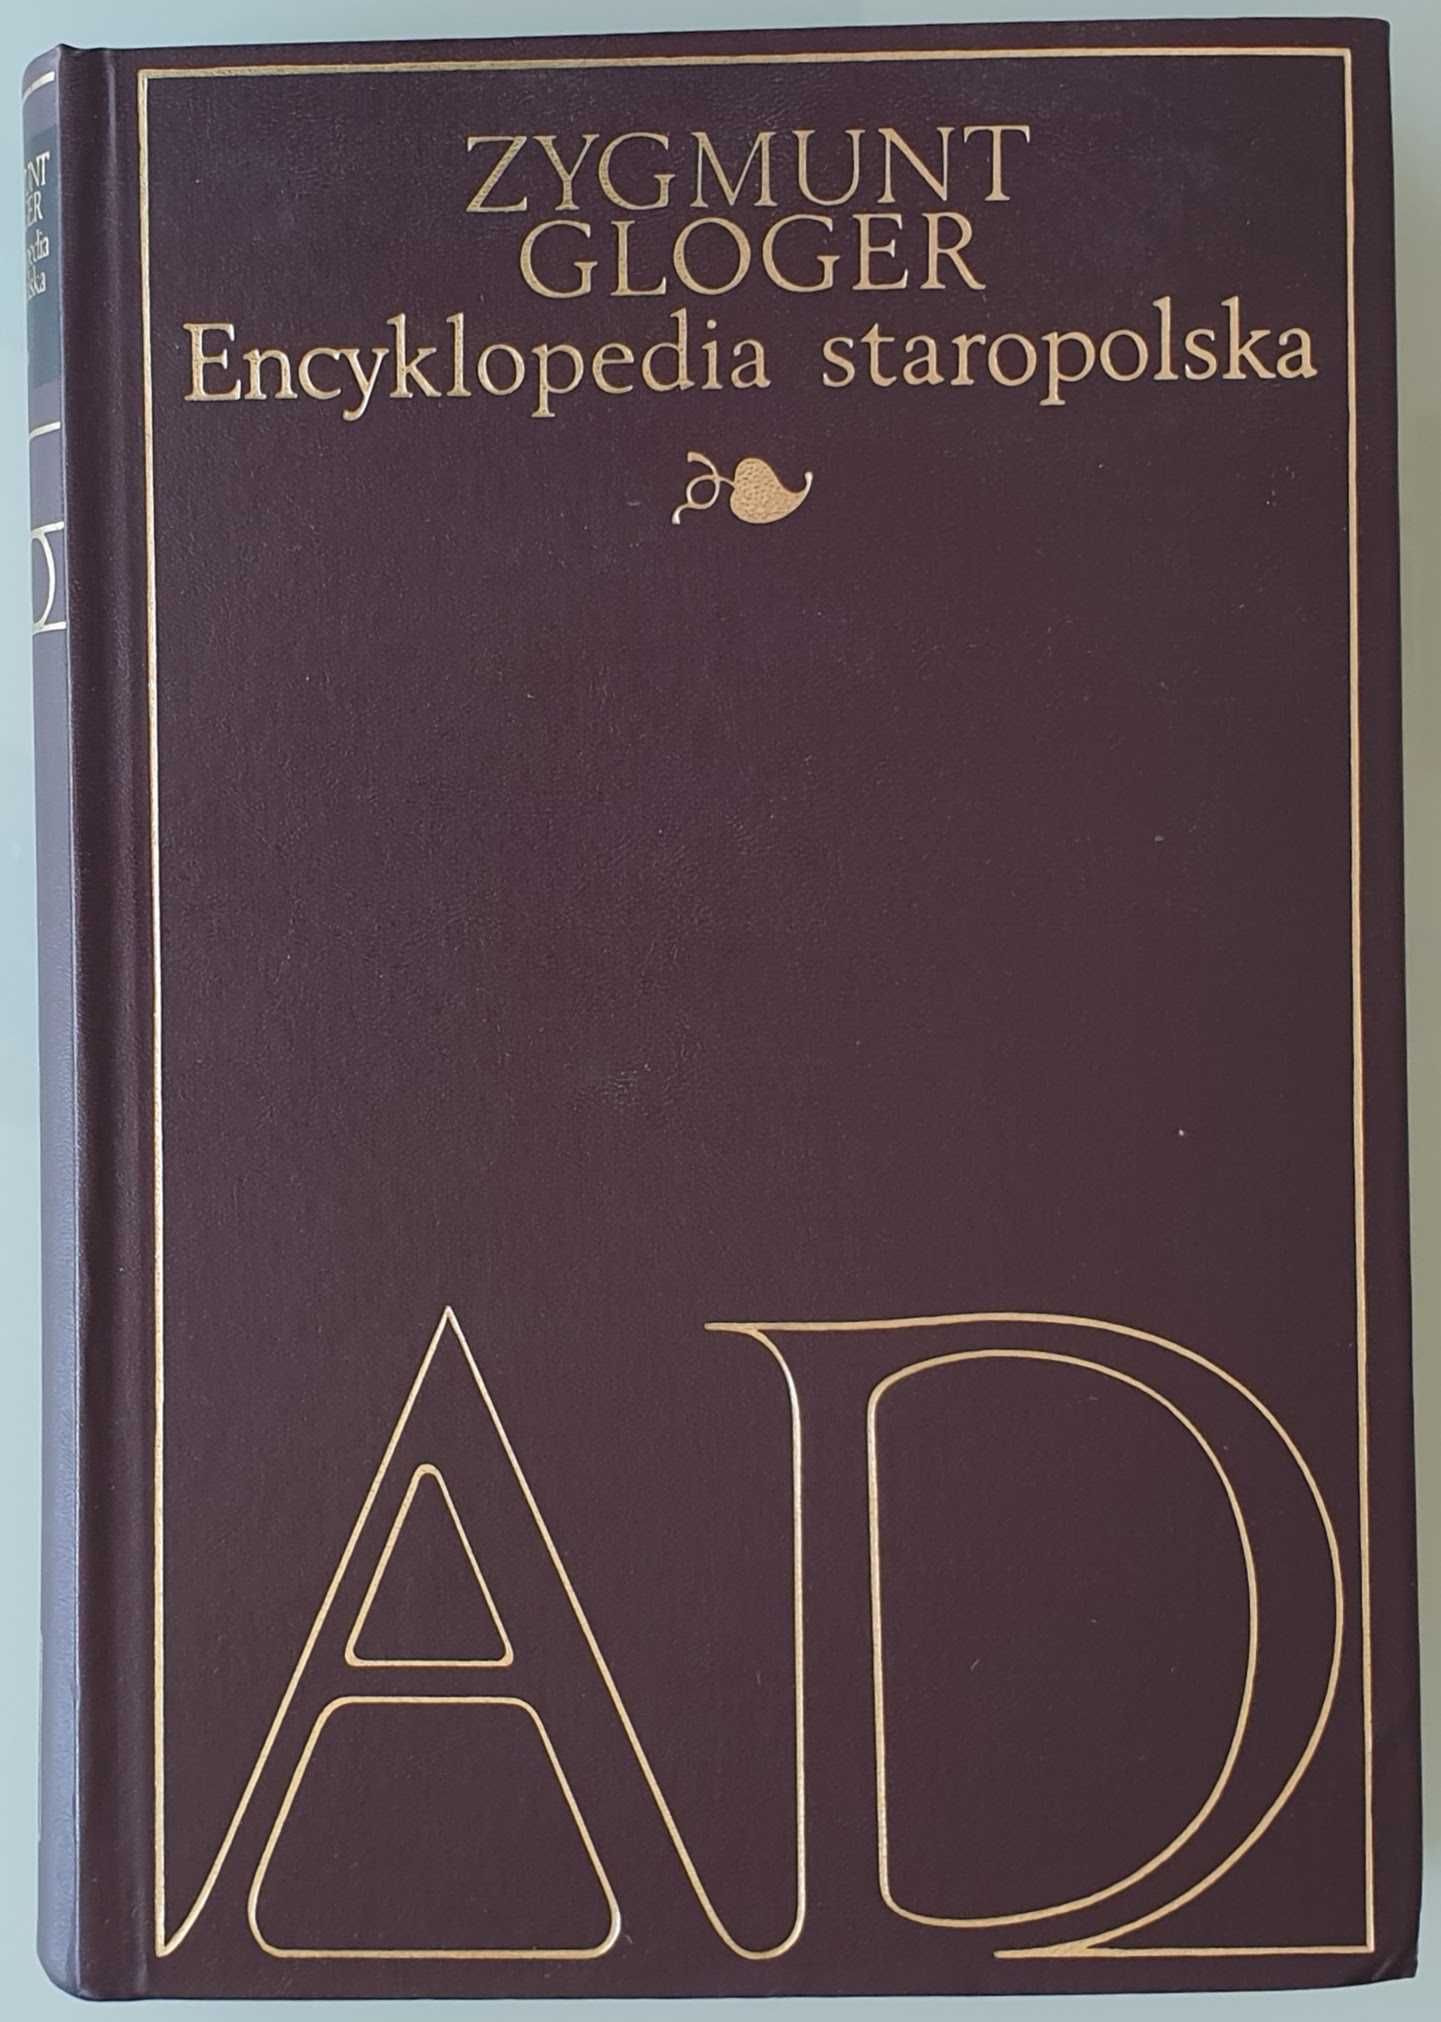 Encyklopedia staropolska Zygmunt Gloger 4 tomy używana